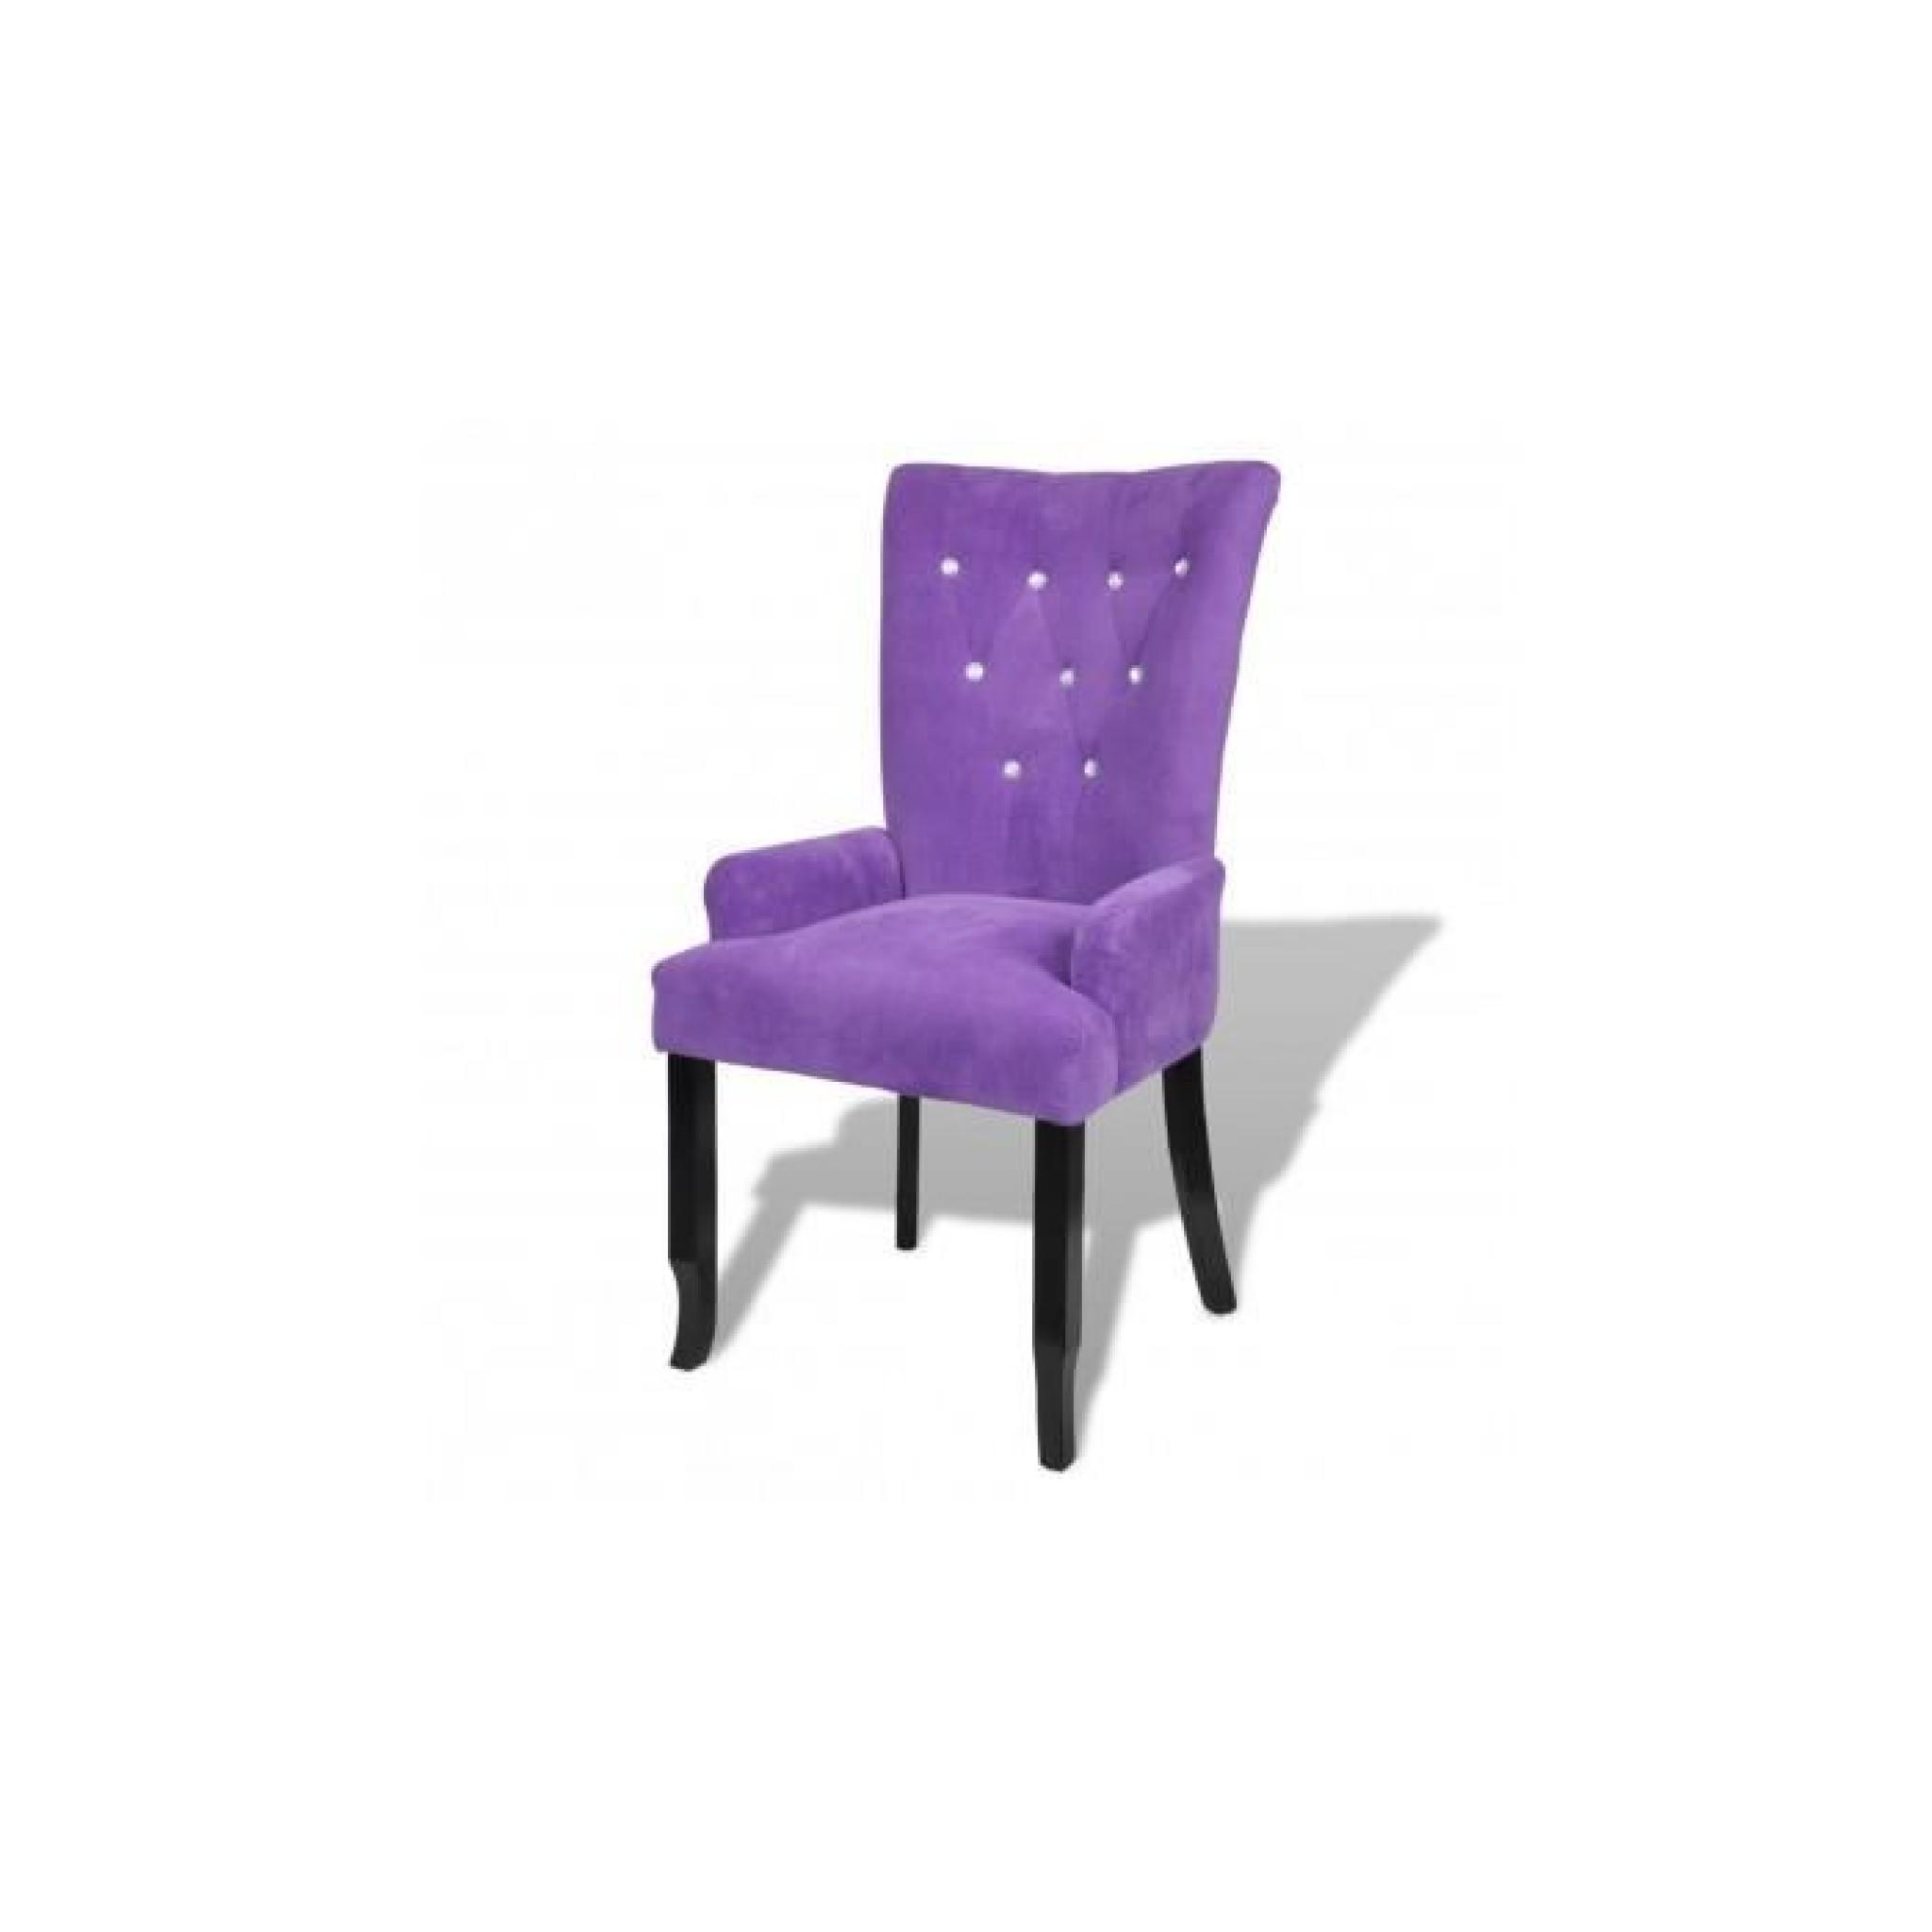 Chaise capitonnée velours violet 54 x 56 x 106 cm pas cher